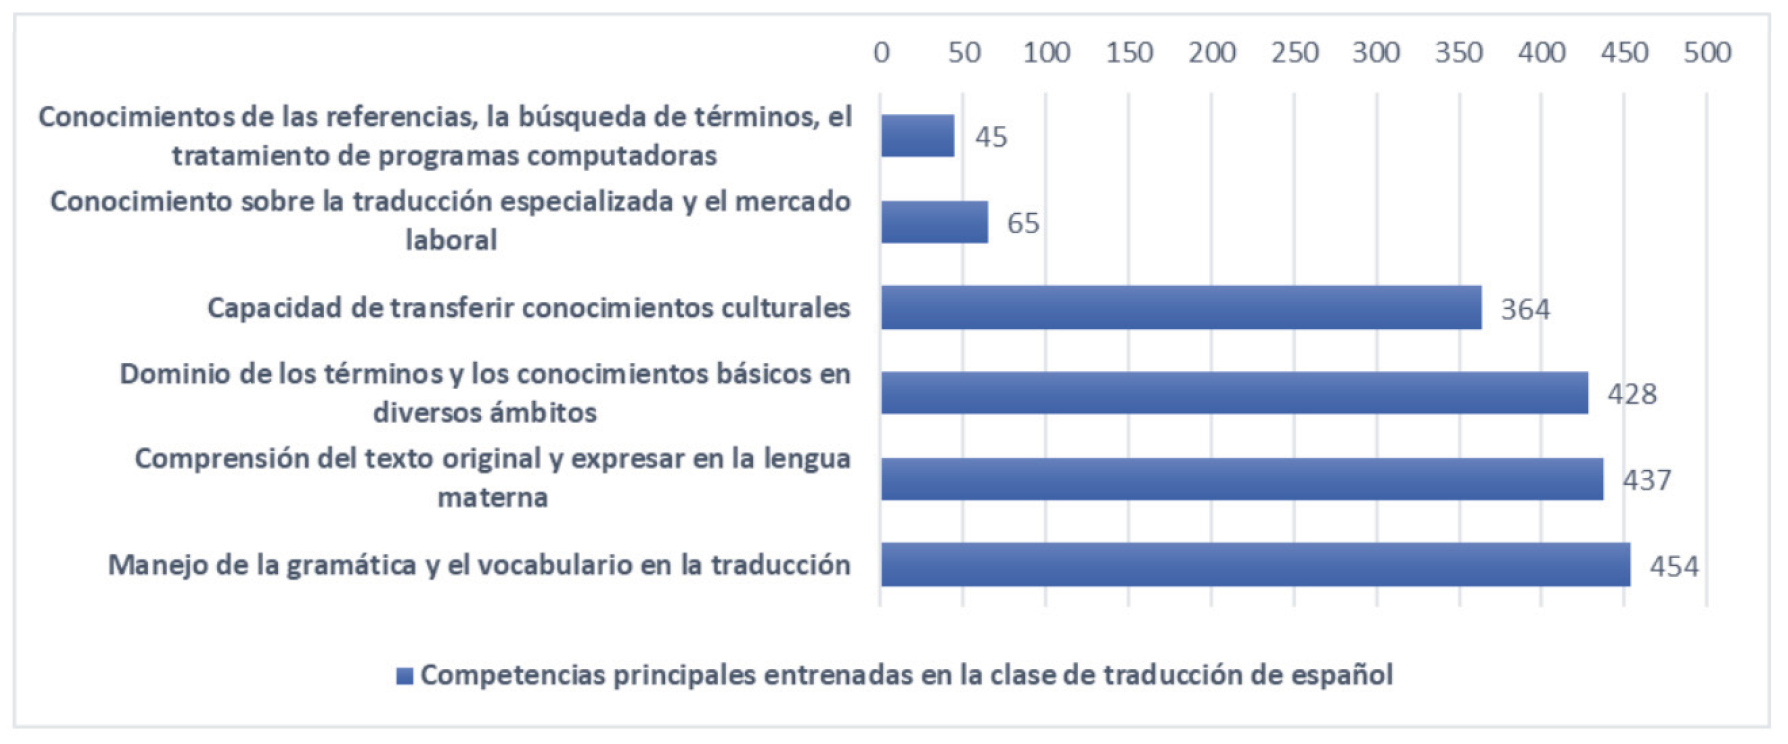 Gráfico VI. Competencias principales entrenadas en la clase de traducción de español (Elaboración propia).